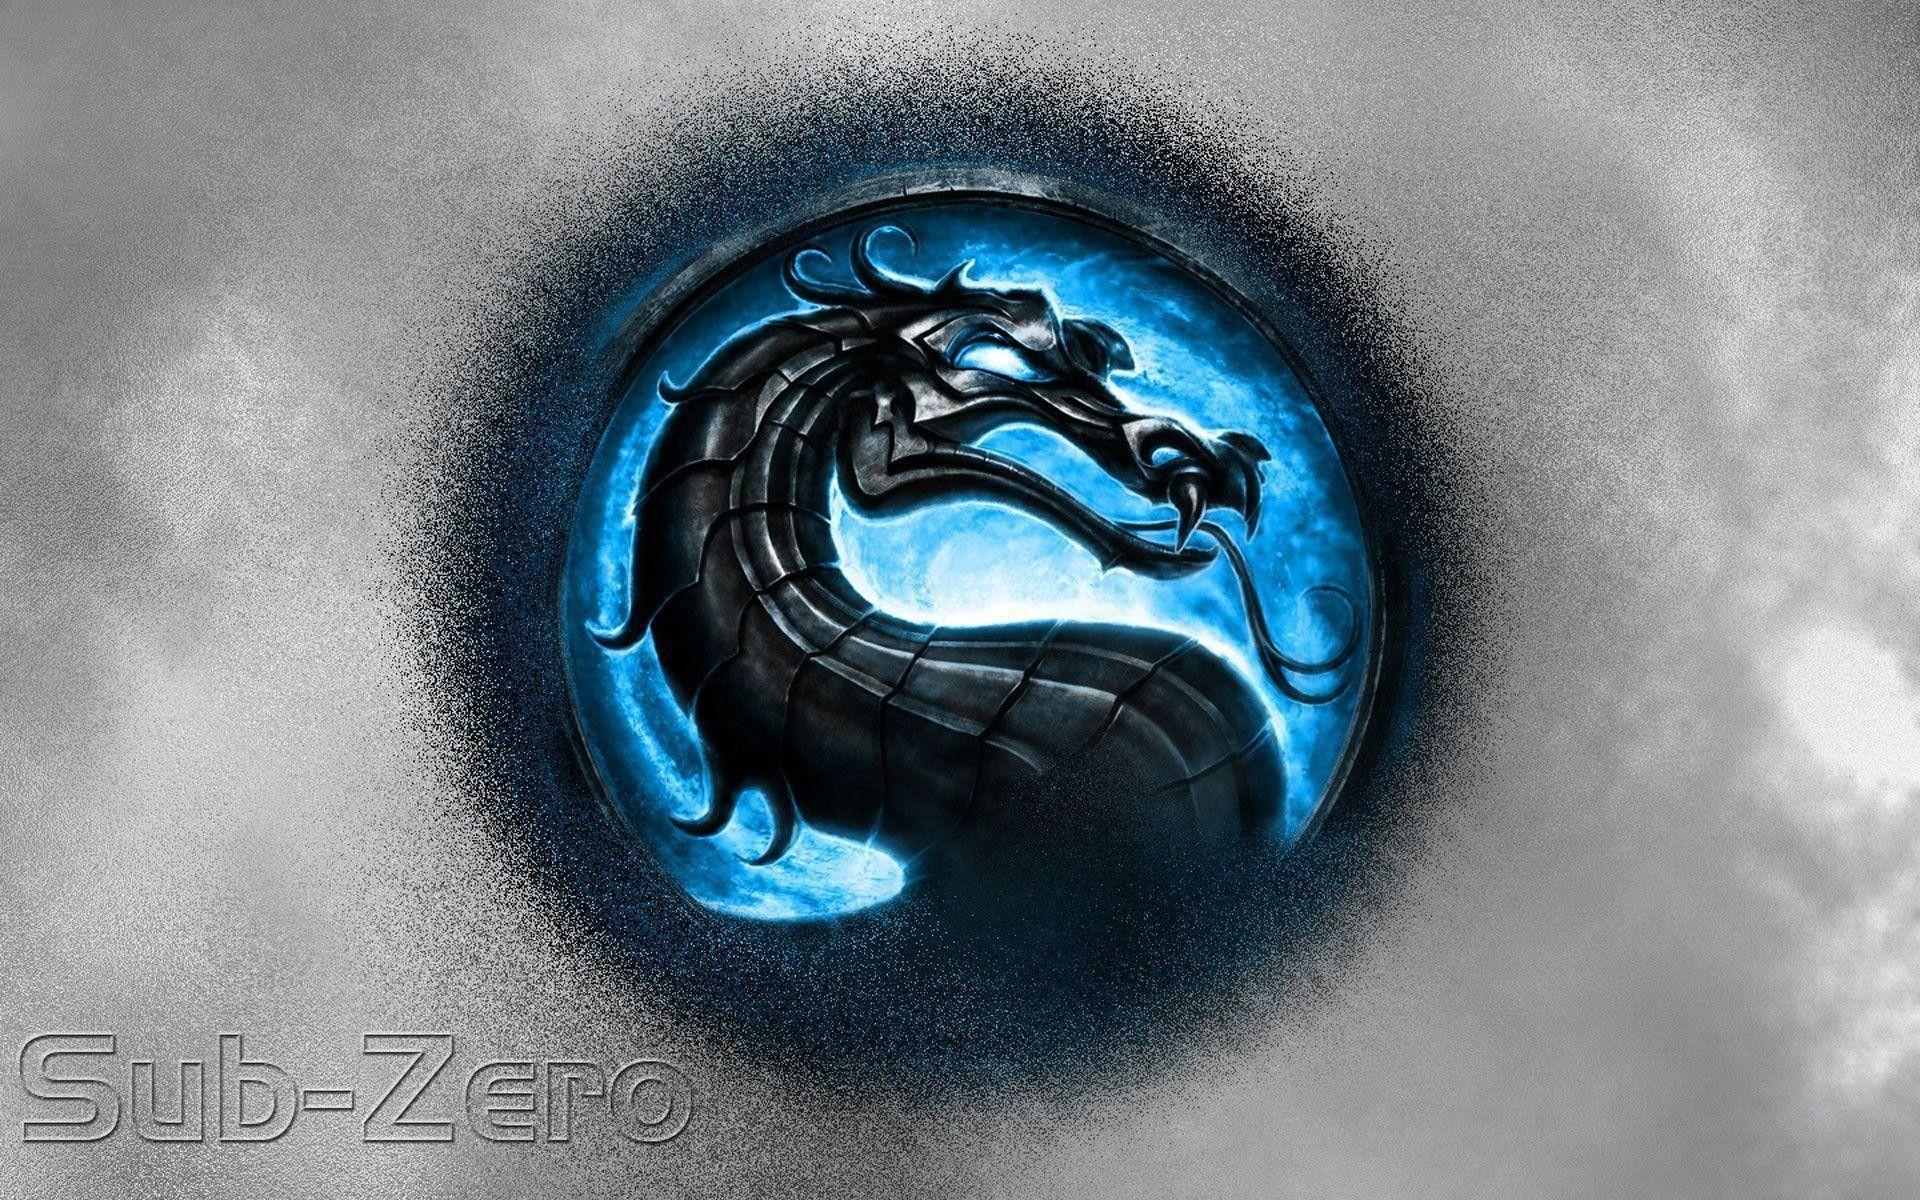 Cool Dragon Logo - LogoDix